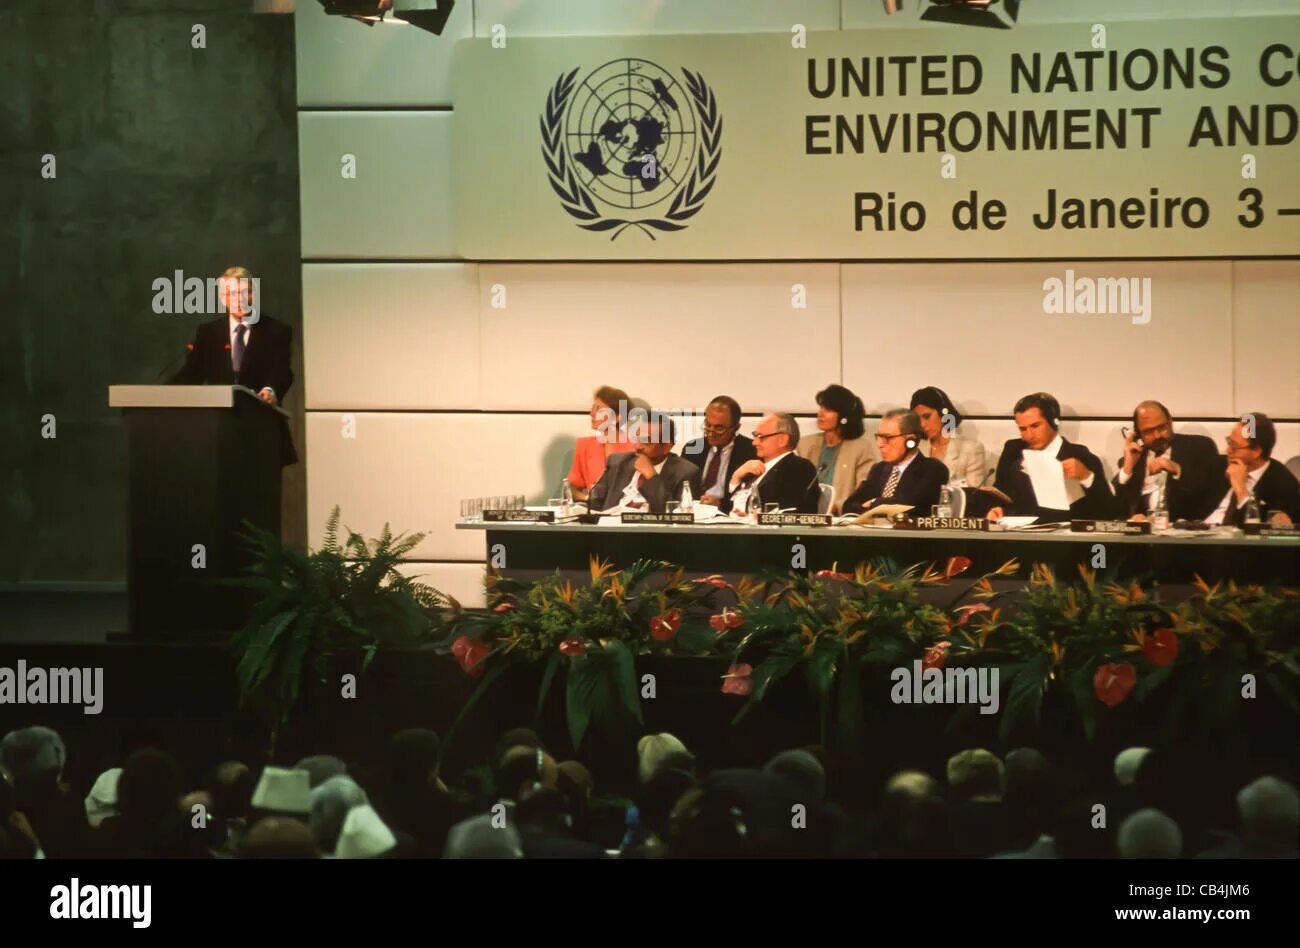 Конференция ООН В Рио де Жанейро 1992. Саммит в Рио де Жанейро 1992. Конференция ООН по окружающей среде и развитию в Рио-де-Жанейро. Конференции ООН по окружающей среде в Рио-де-Жанейро (1992 г.)». Конференция саммит